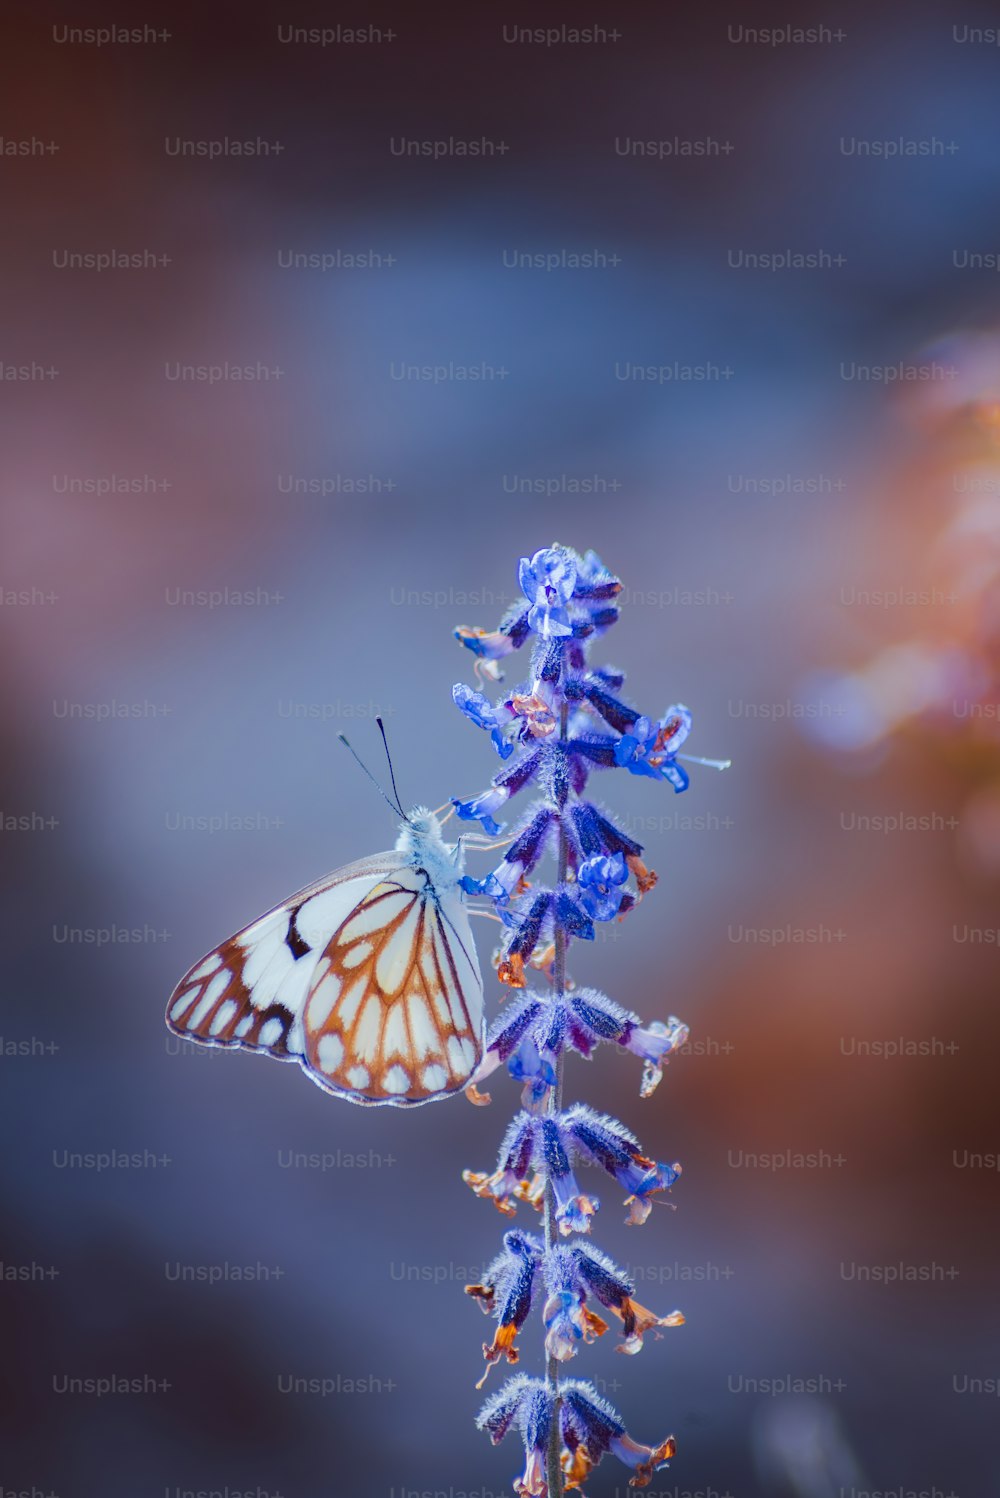 보라색 꽃 위에 앉아있는 나비